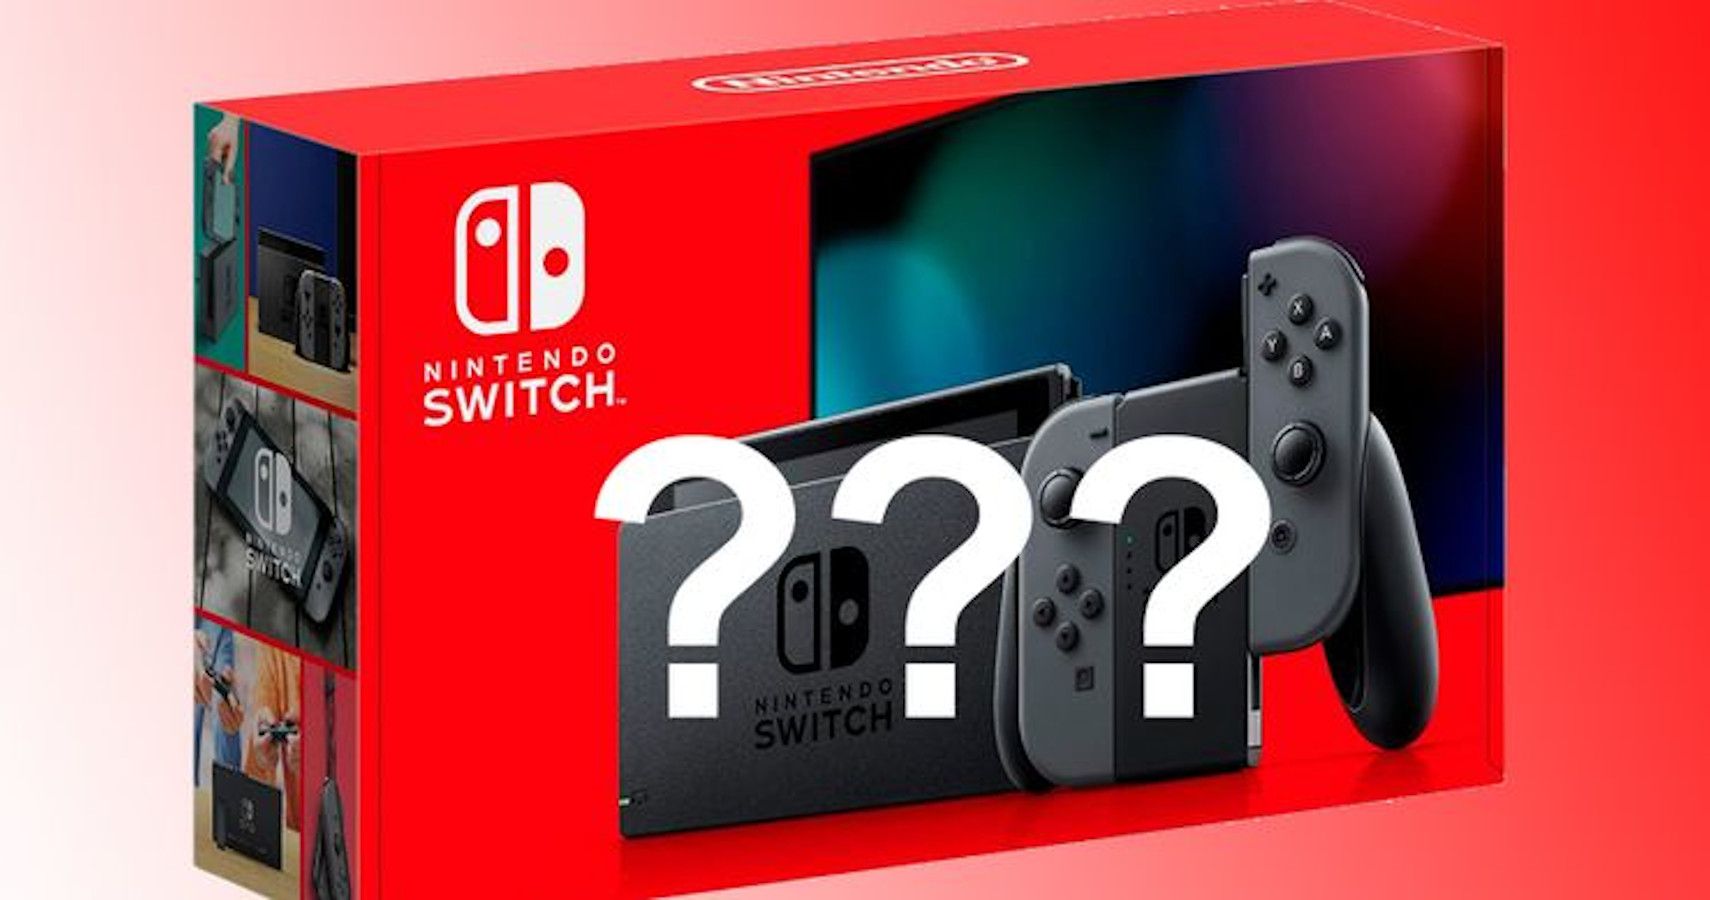 Go nintendo switch. Нинтендо свитч Эстетика. Новая модель Nintendo Switch выйдет в 2024 году.